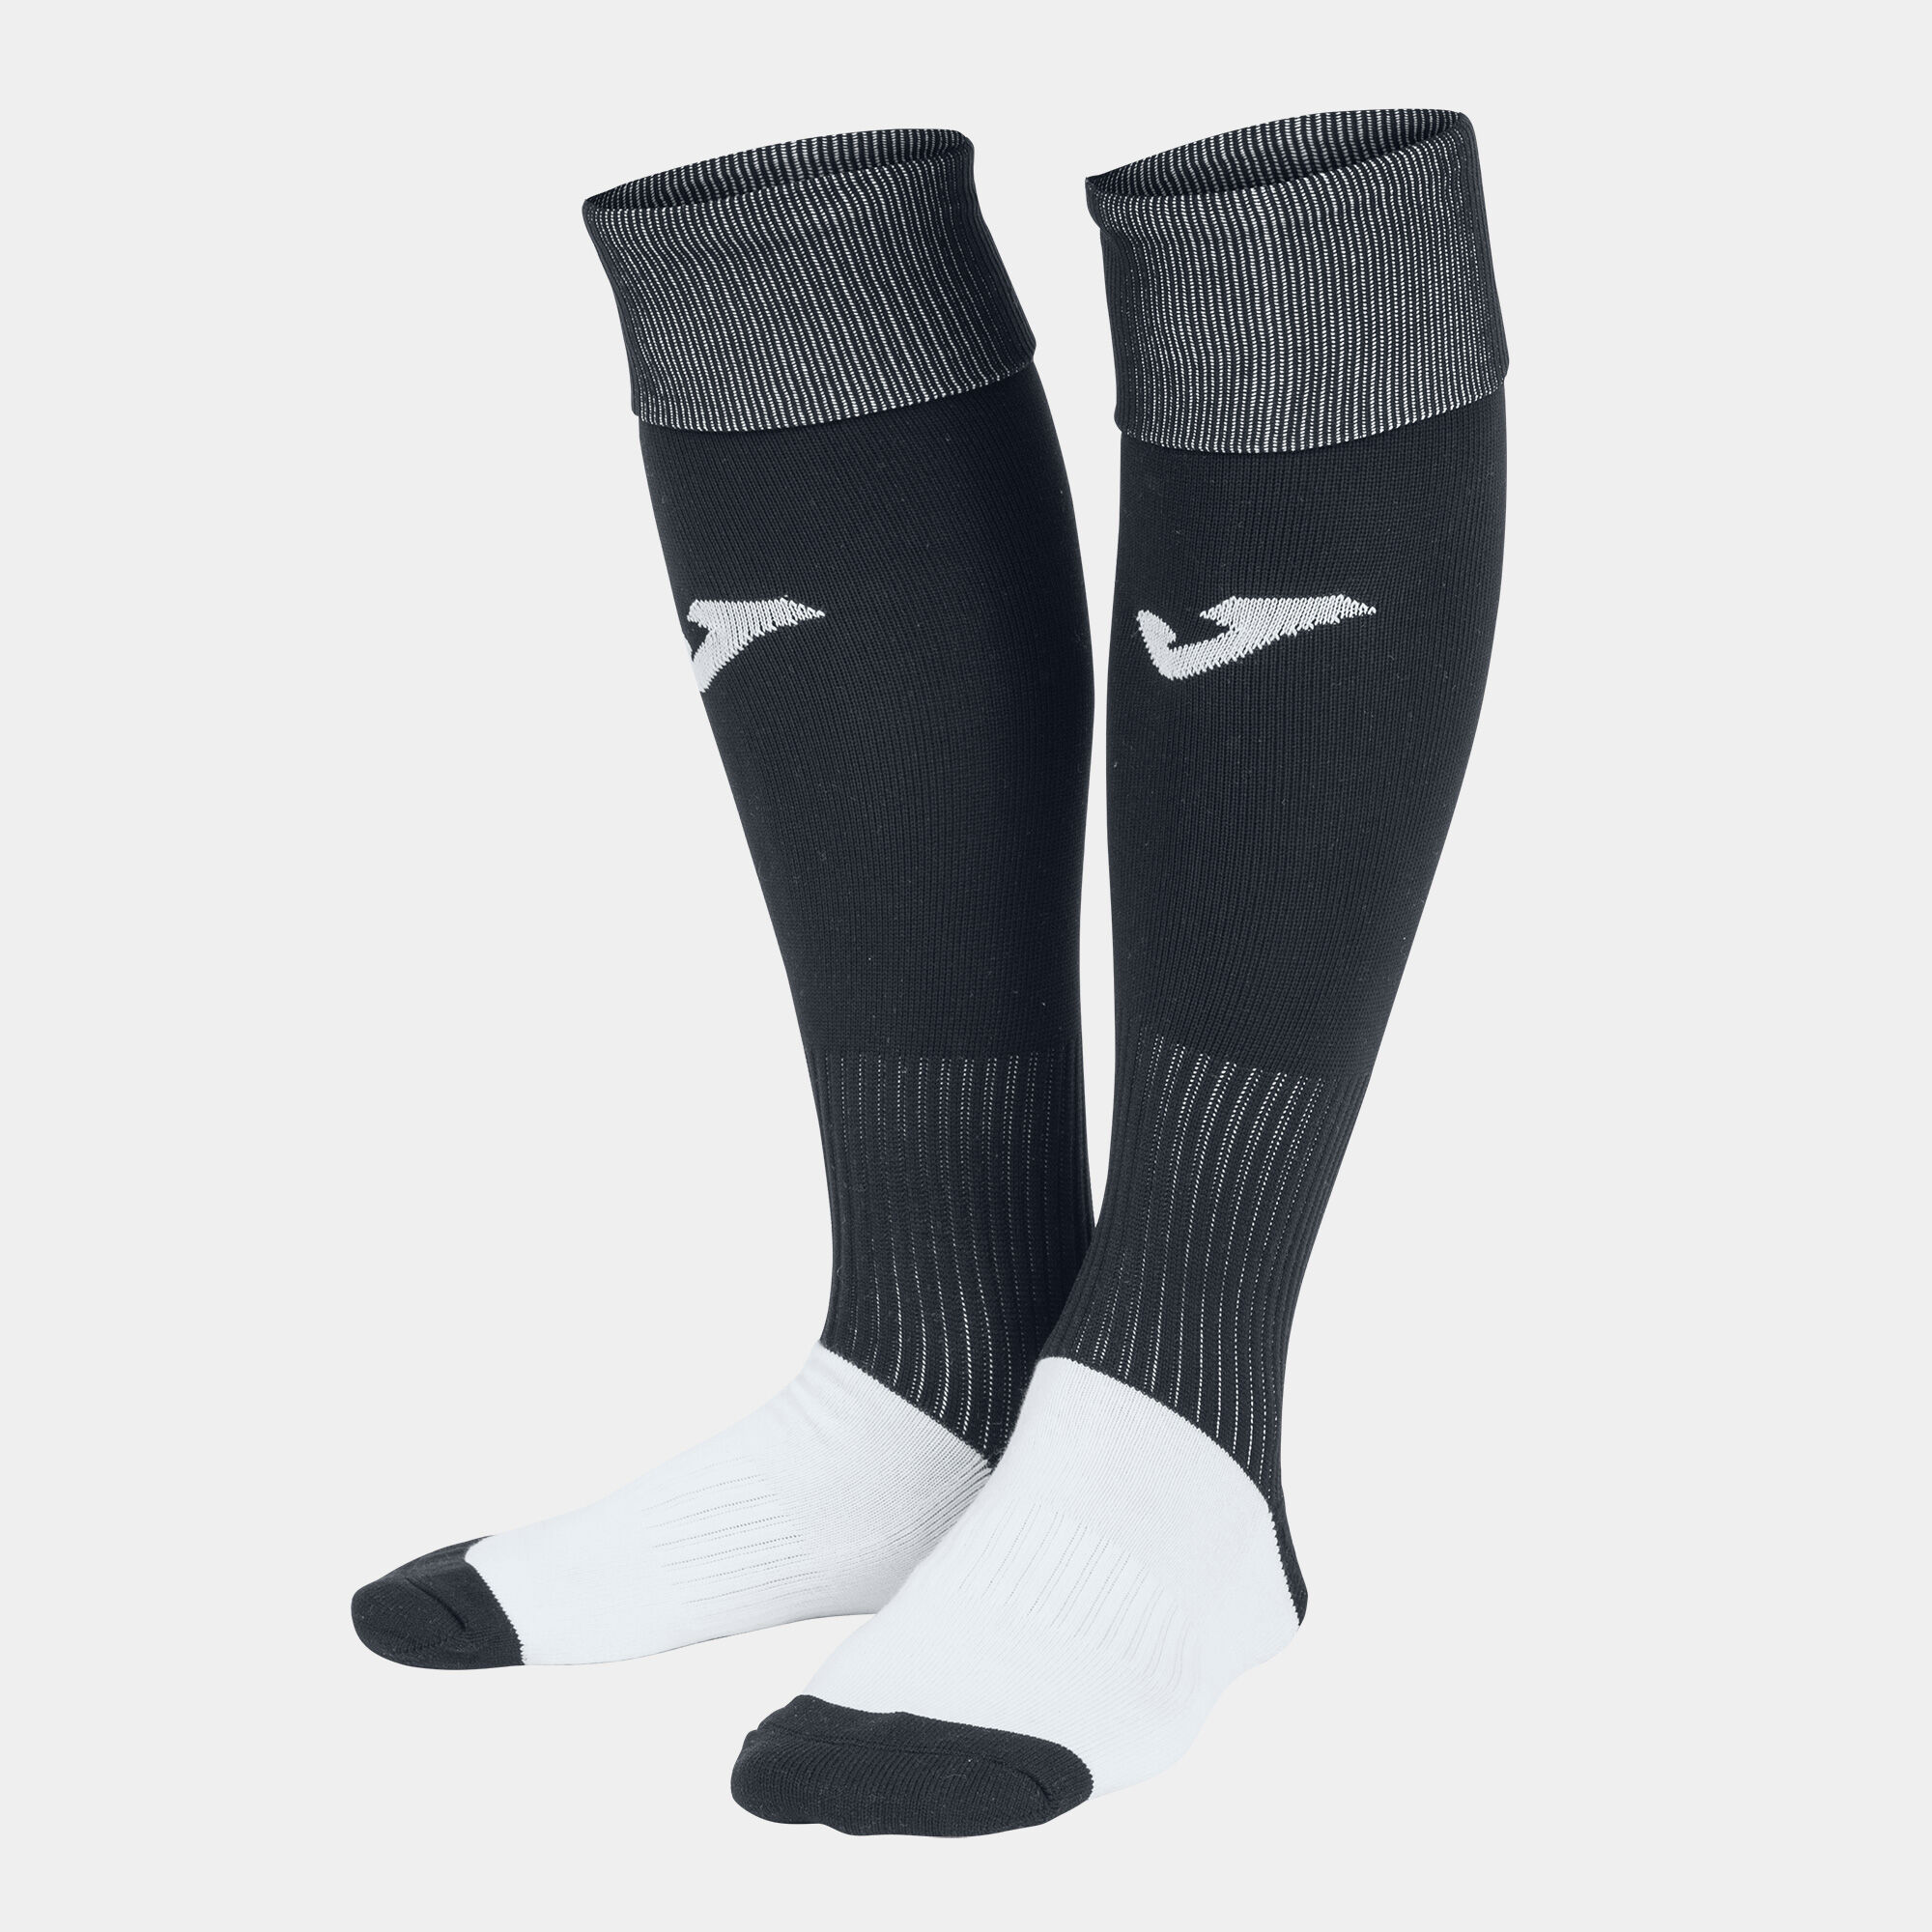 Joma Calcio Socks in Black/White size L 